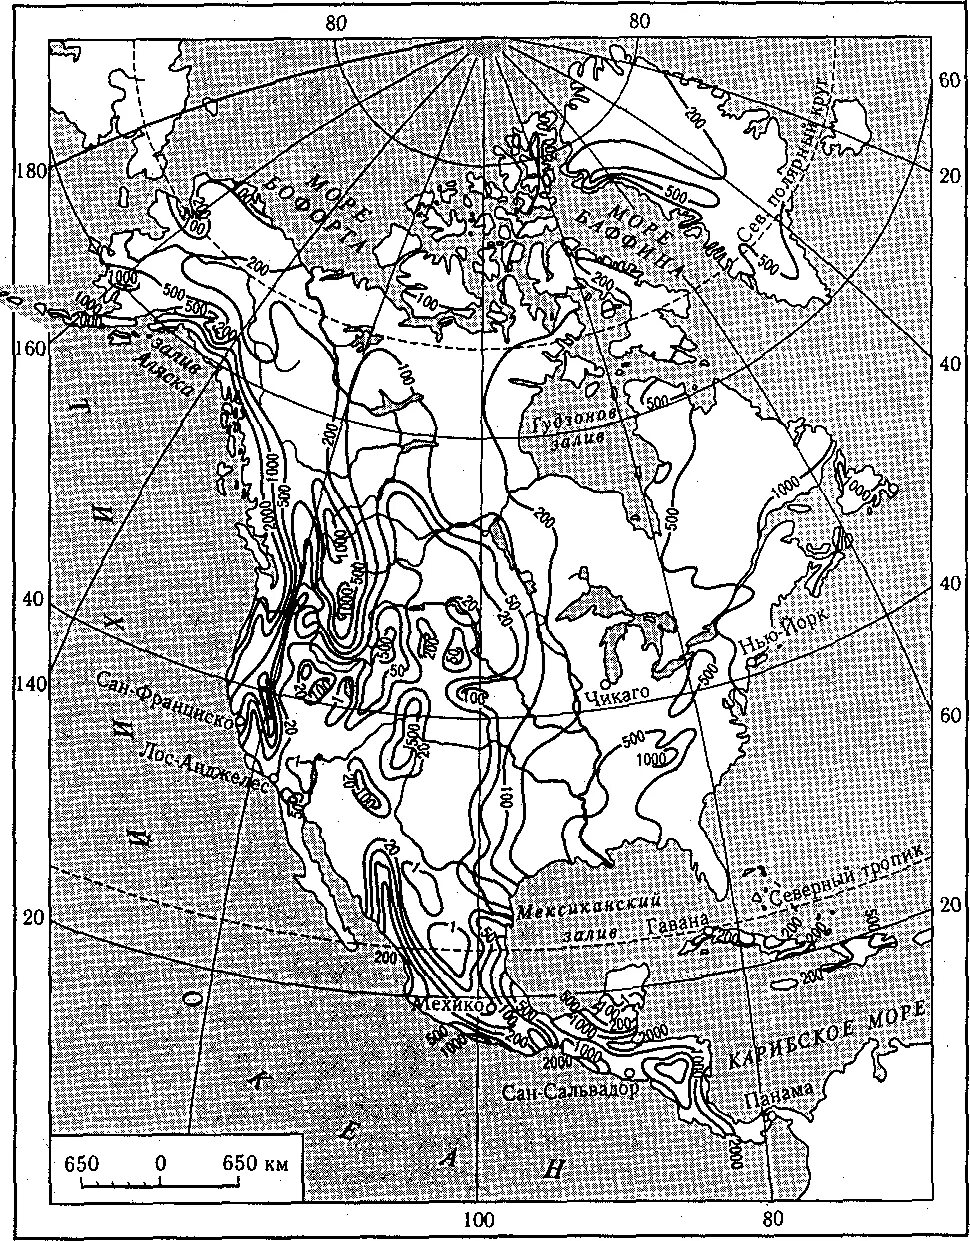 Карта рек северной америки на русском. Гидрографическая карта Северной Америки. Водная система Северной Америки. Речные бассейны Северной Америки. Внутренние воды Северной Америки на контурной карте.